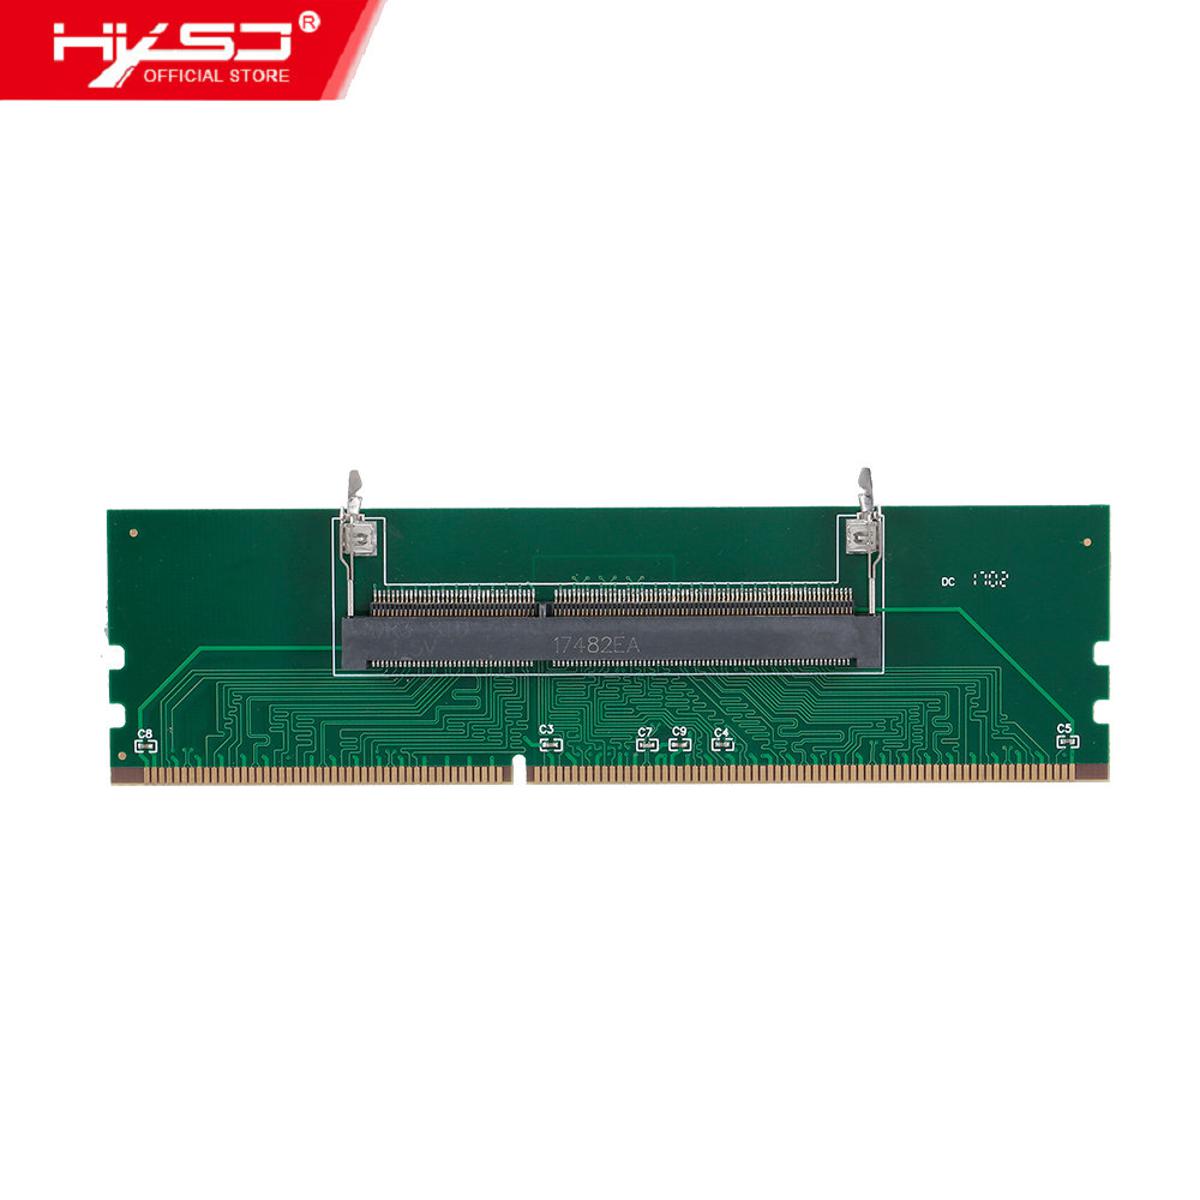 HXSJ Ddr3 Lapt-op To Deskt-op Ddr3 Memory Ram Connector Adapter C-ard 1.5V Ddr3 Converter C-ard